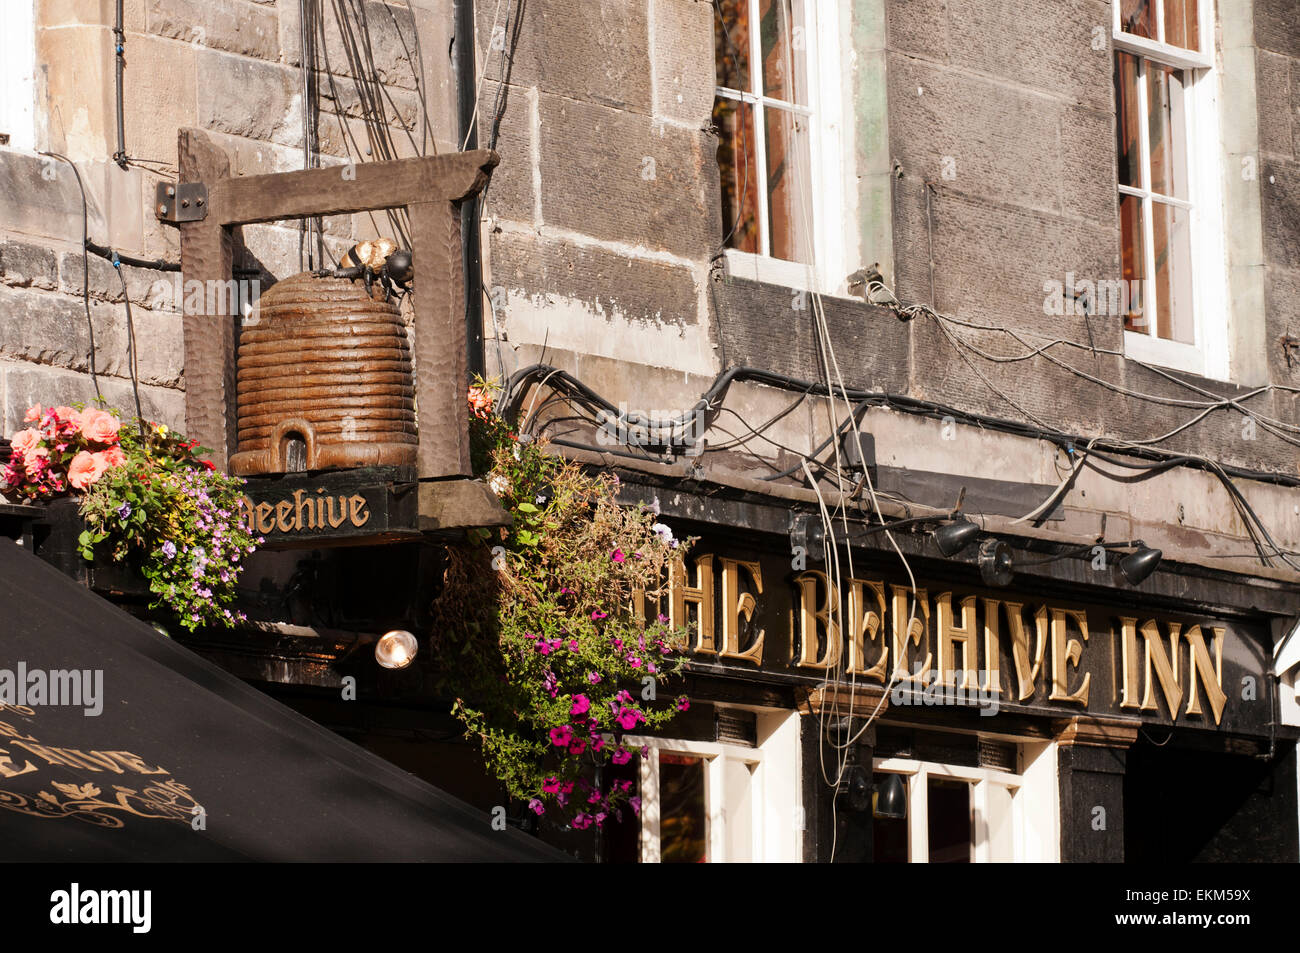 The Beehive Inn in Edinburgh's Grassmarket Square. Stock Photo